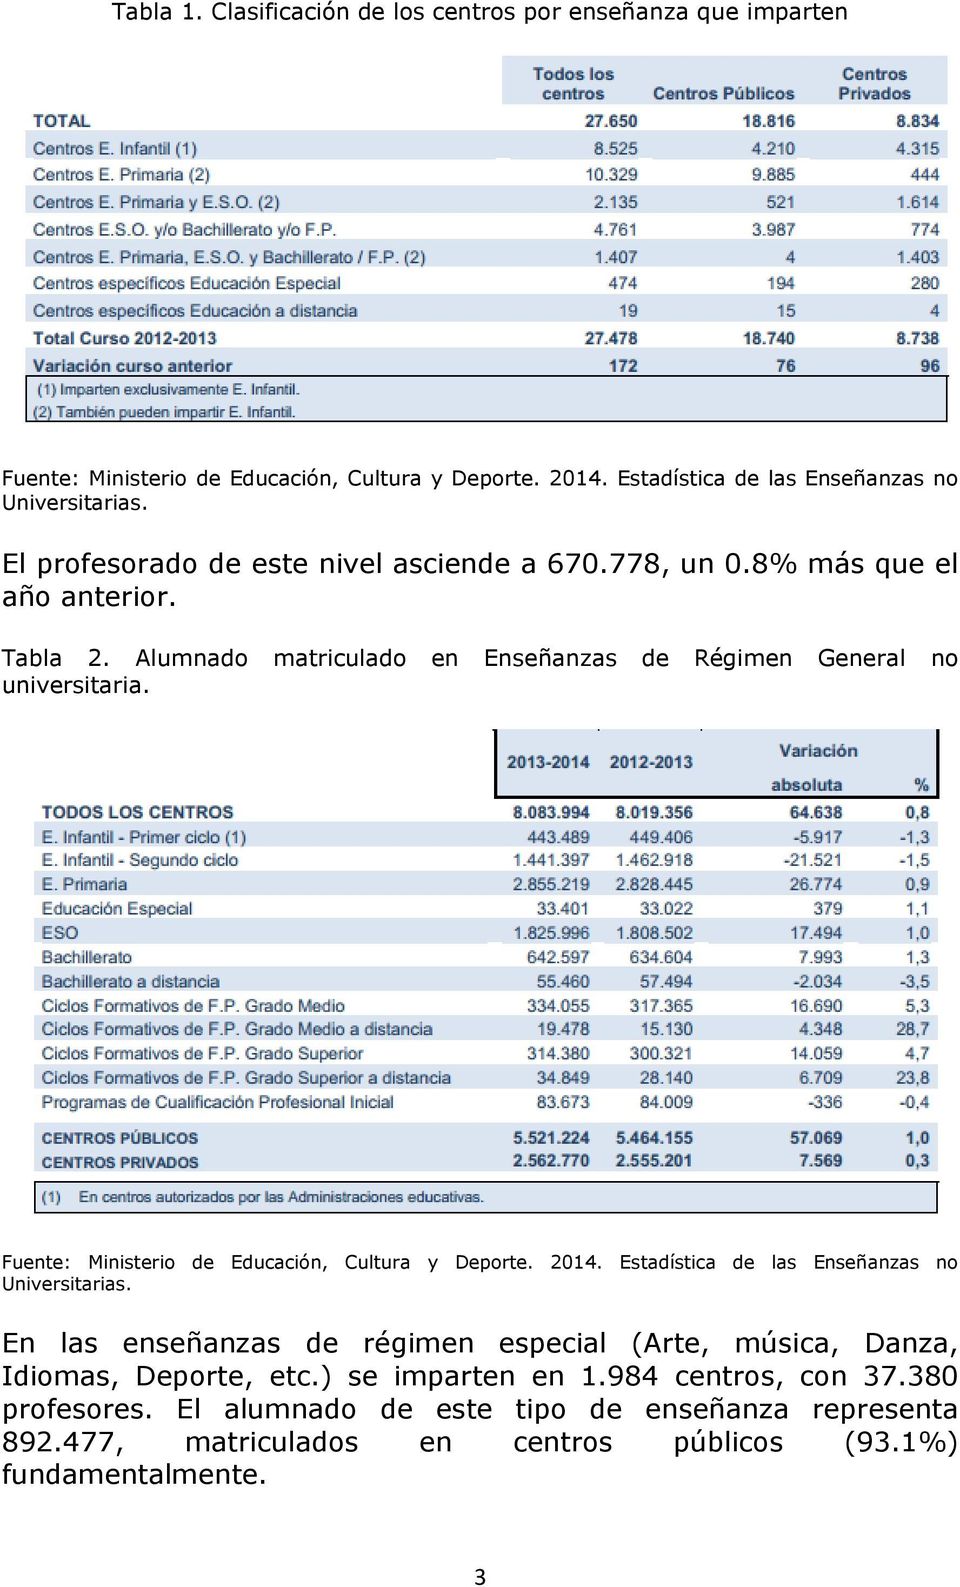 Fuente: Ministerio de Educación, Cultura y Deporte. 2014. Estadística de las Enseñanzas no Universitarias.